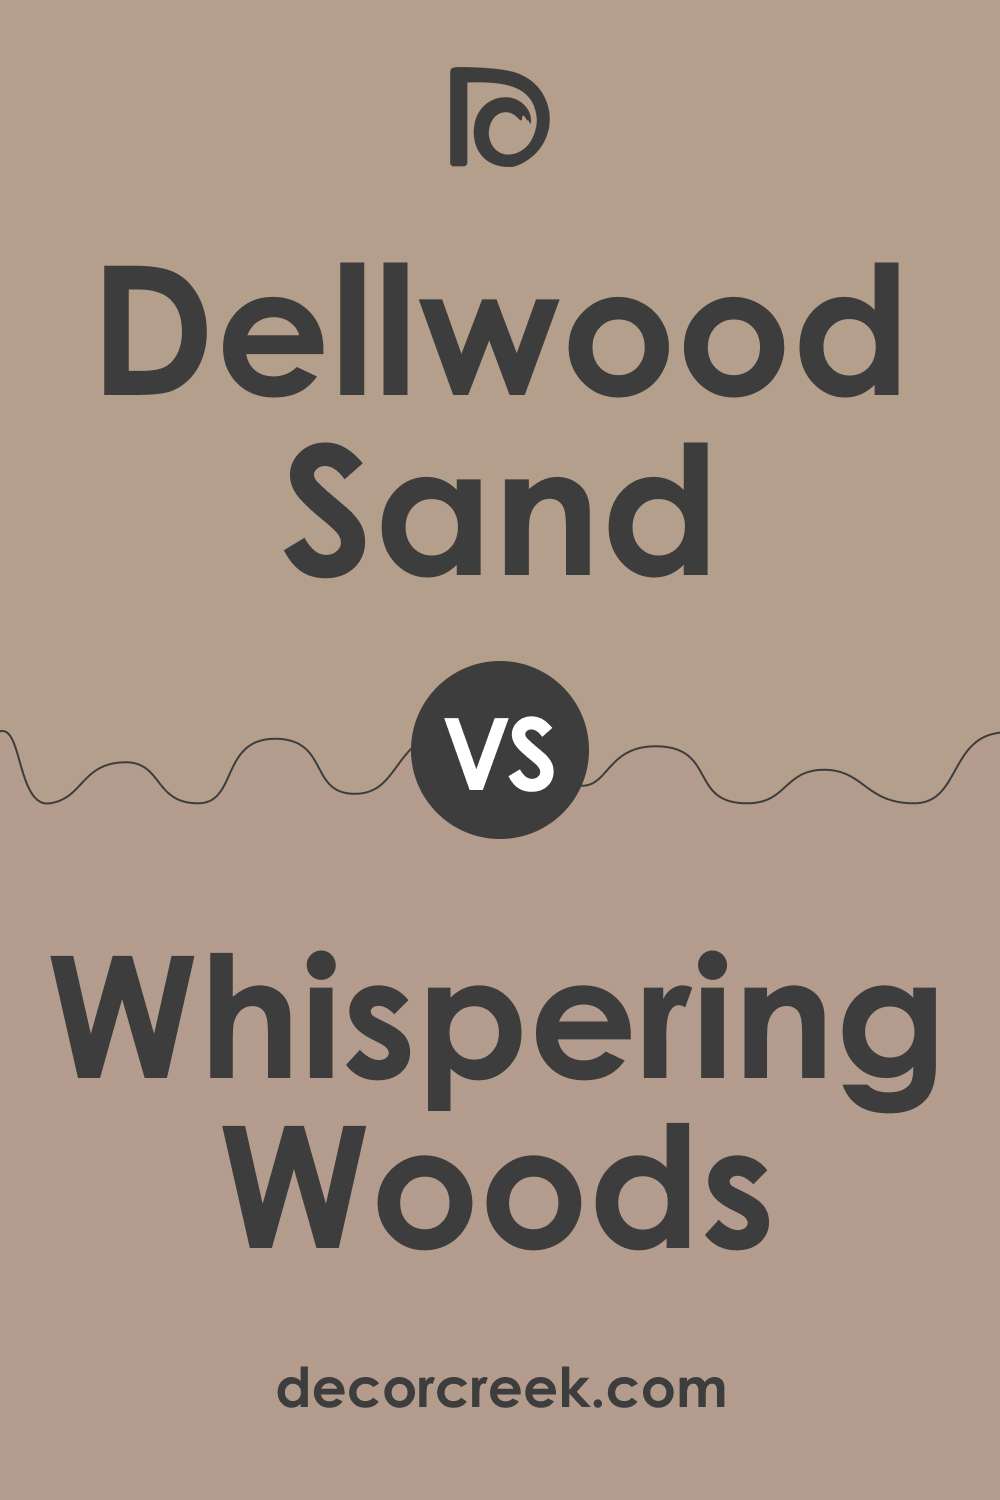 Dellwood Sand 1019 vs. BM 1012 Whispering Woods